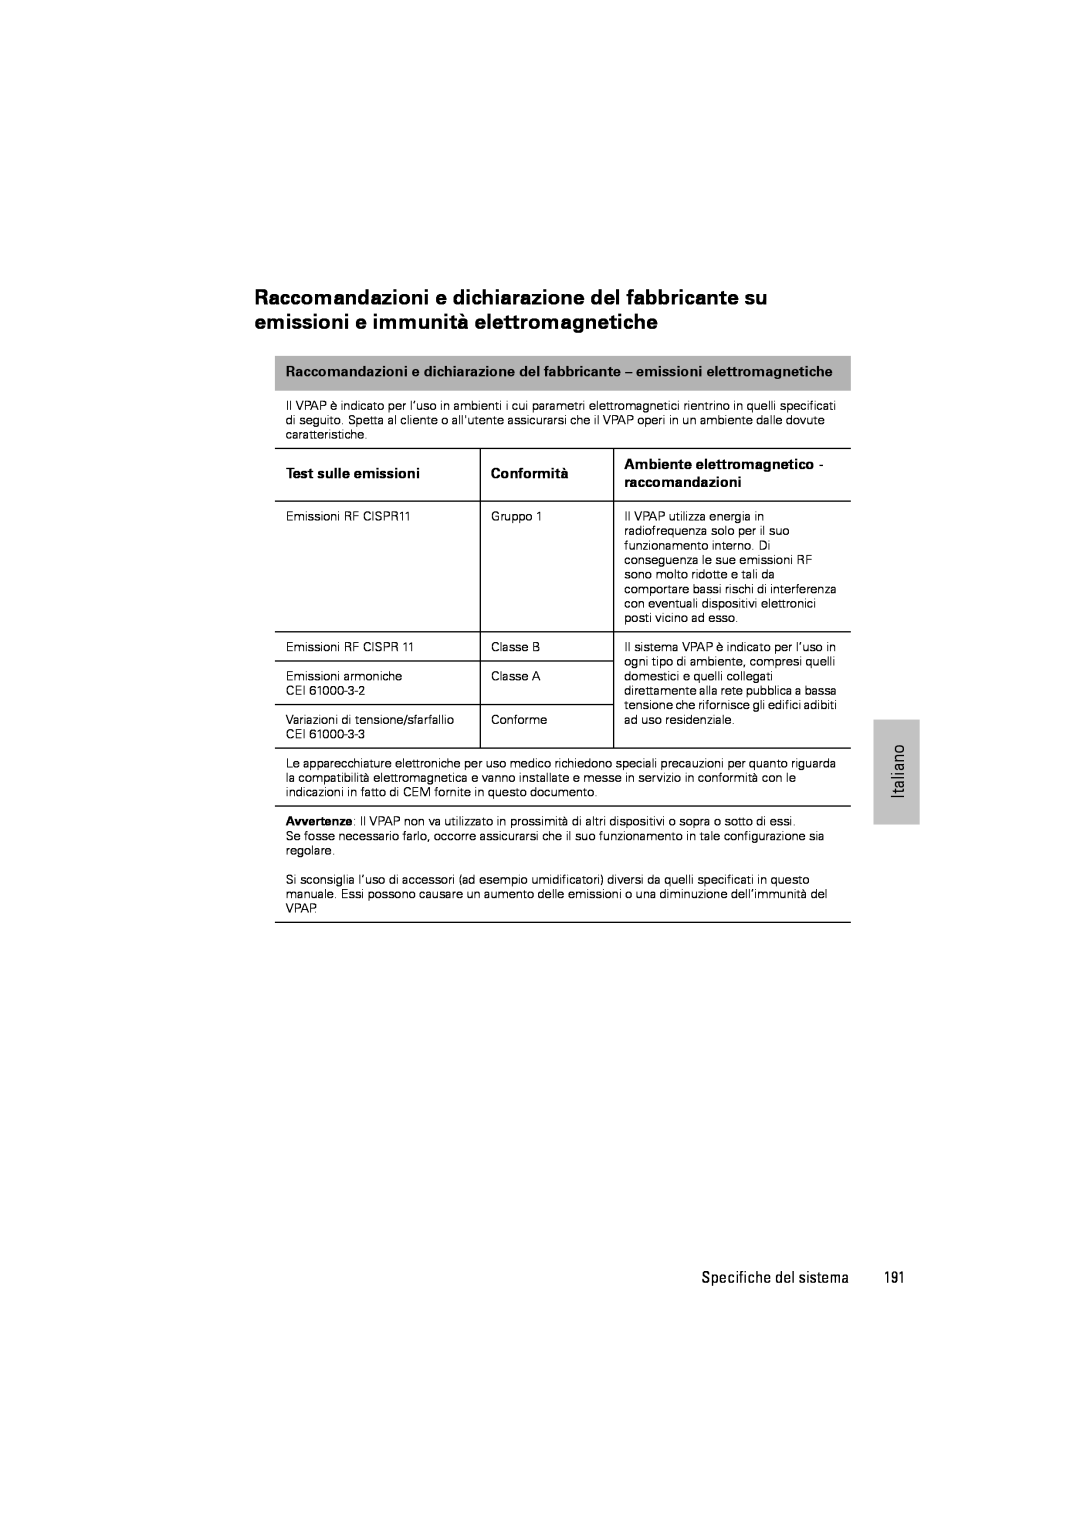 ResMed III & III ST user manual Test sulle emissioni, Conformità, Ambiente elettromagnetico, raccomandazioni 